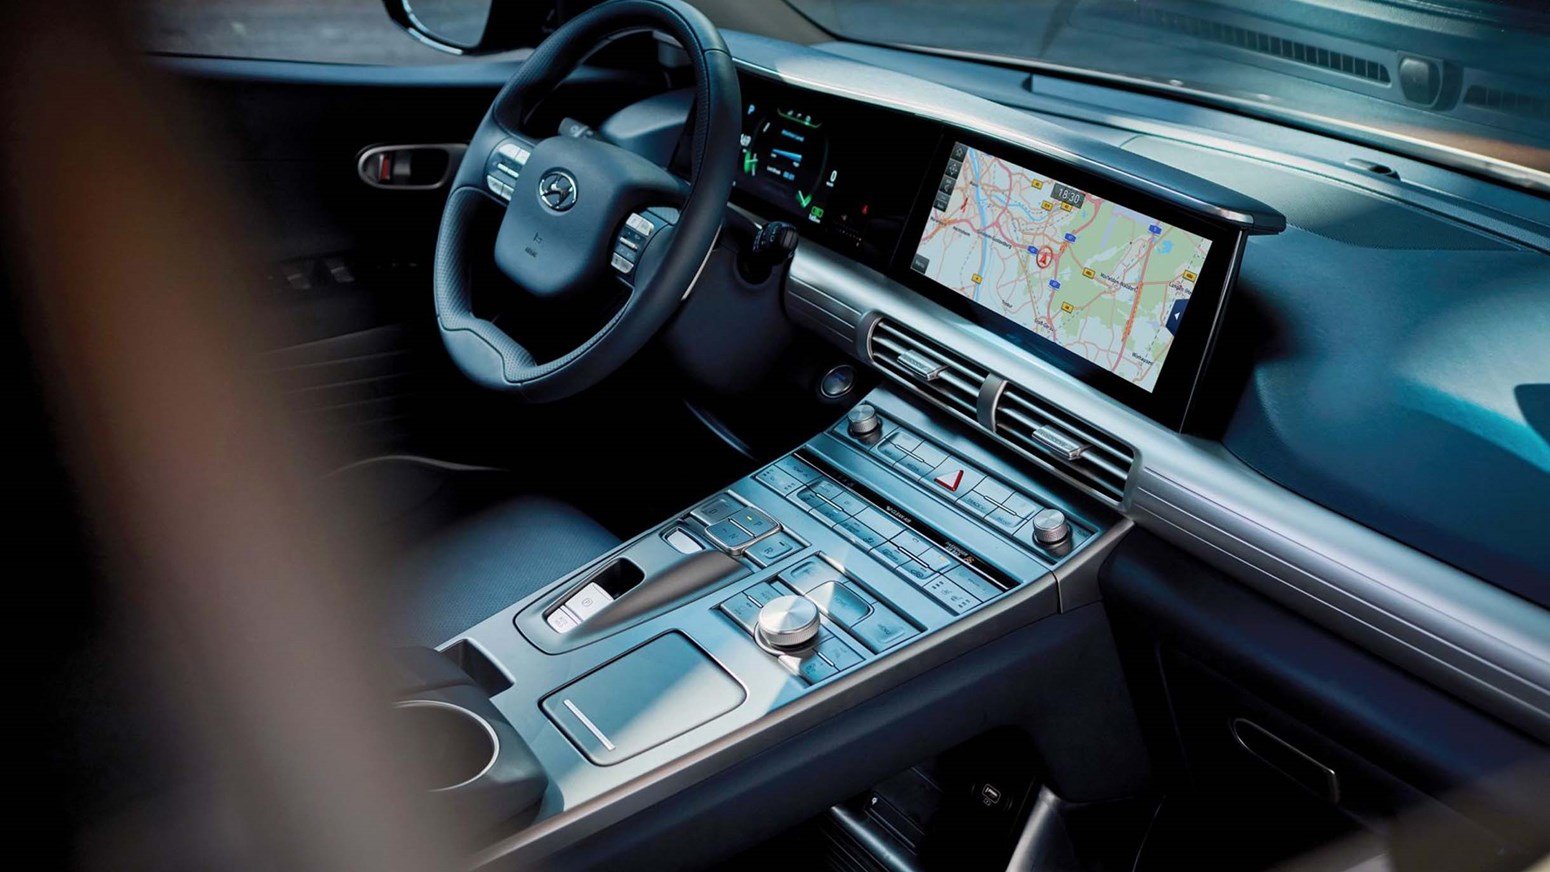 Hyundai NEXO vätgas bränslecellsbil interiör design.